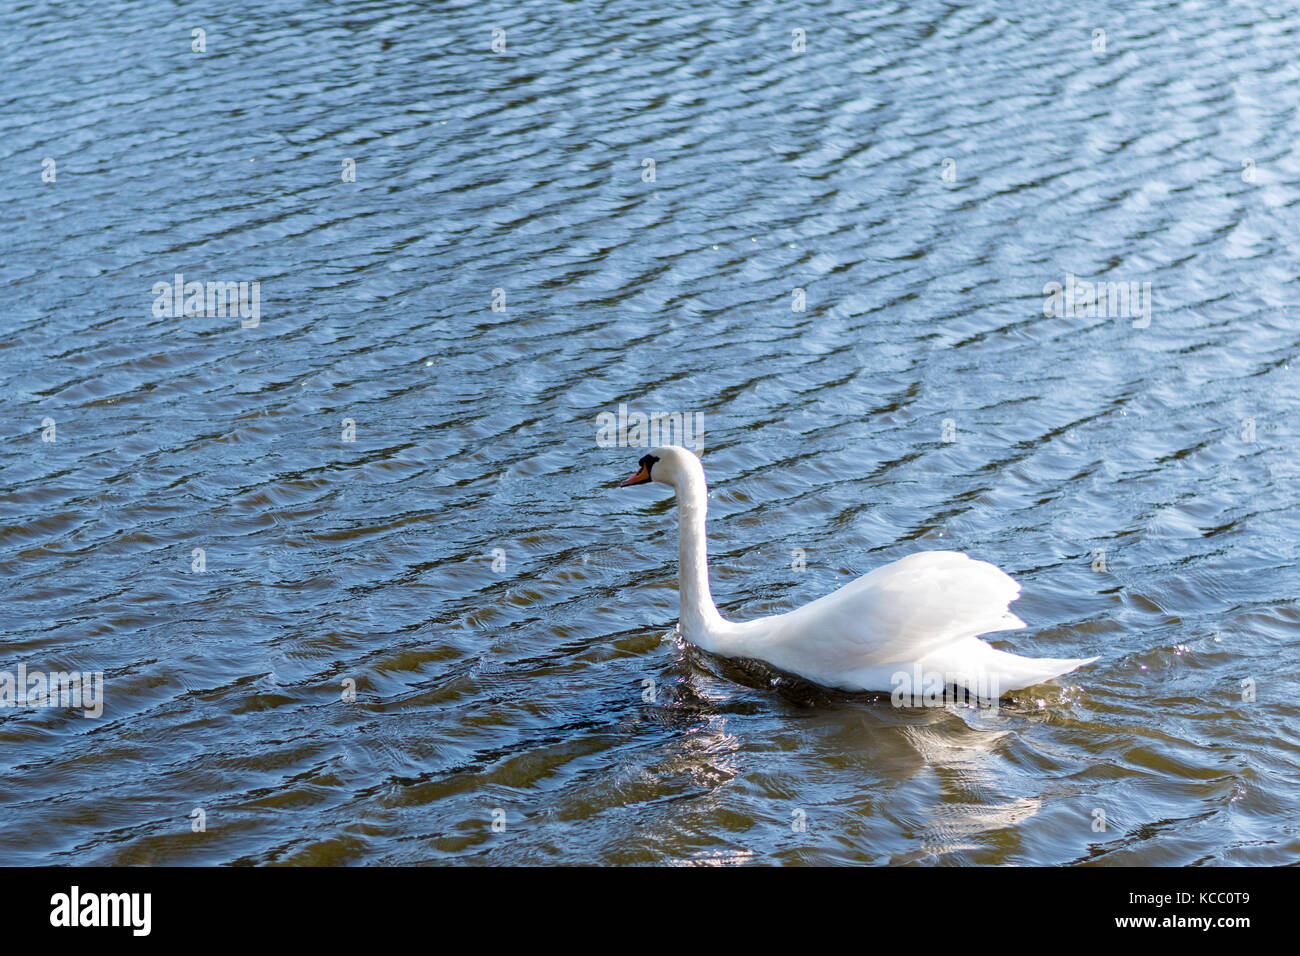 Schönen wilden Schwan Schwimmen in einem See. Reine weiße Federn, Wellen auf der Wasseroberfläche. Stockfoto